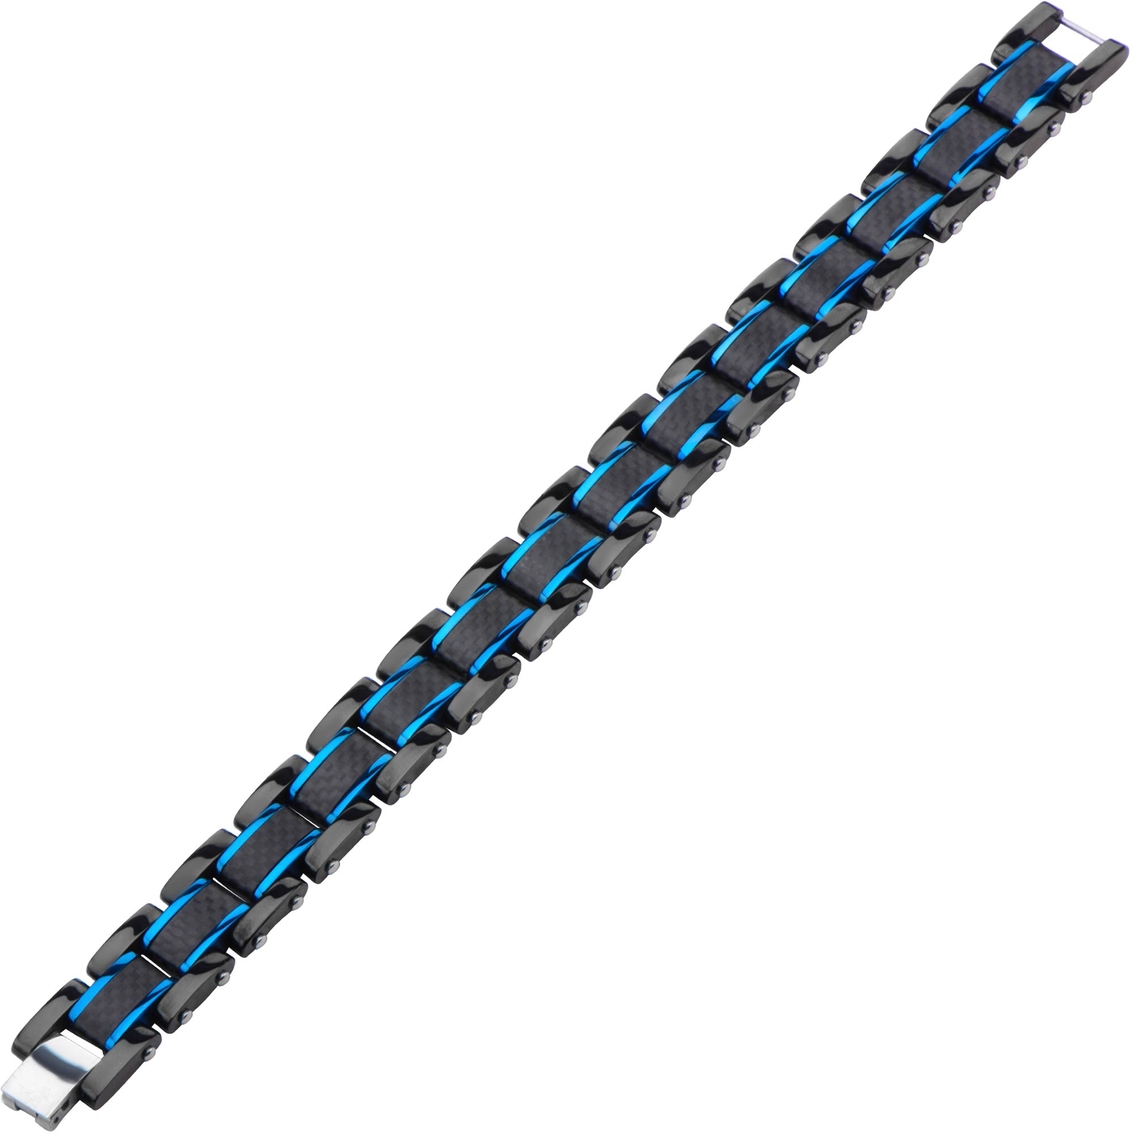 Solid Carbon Fiber Bracelet - Image 2 of 2